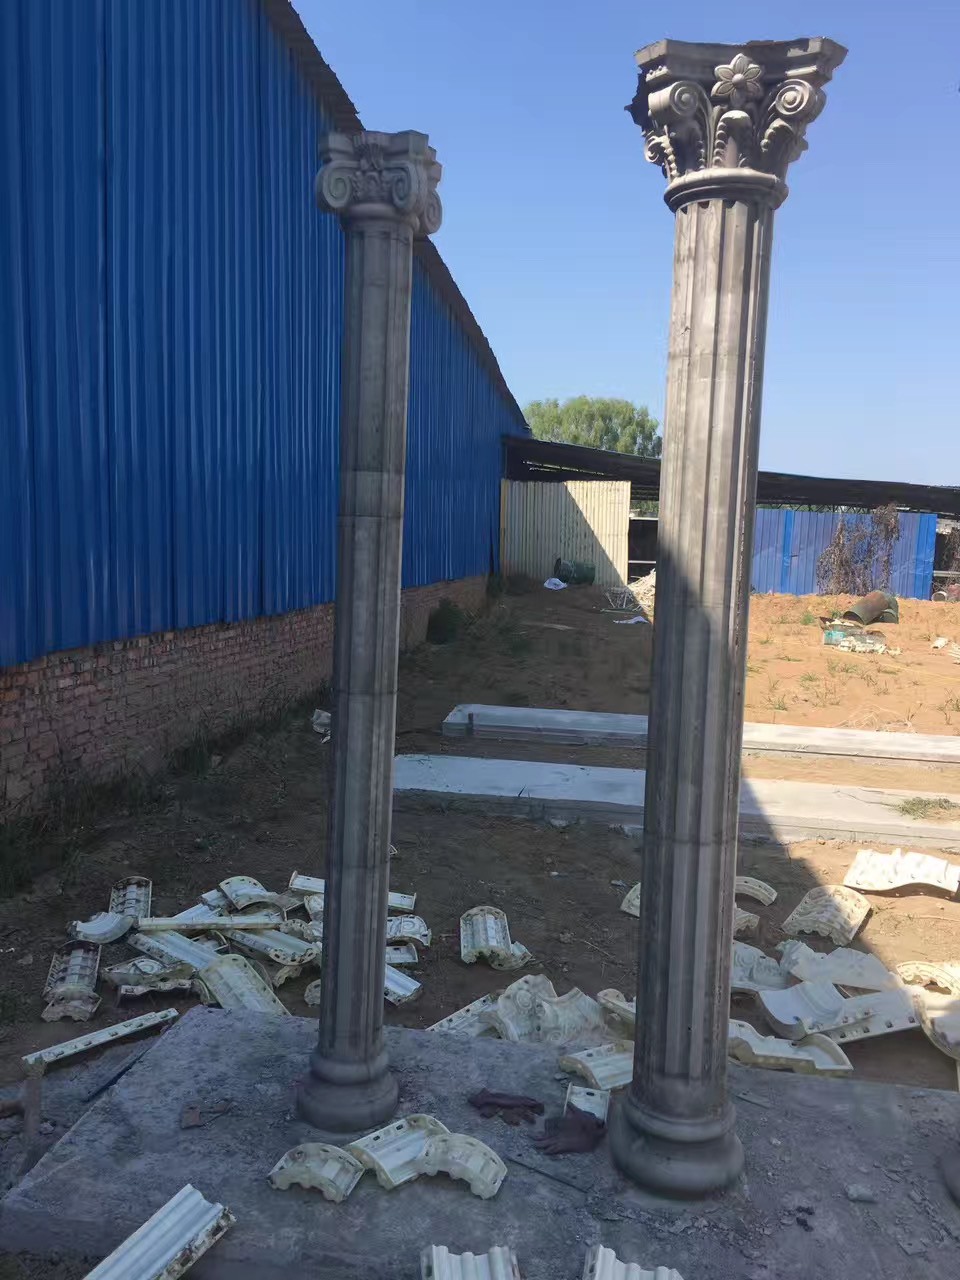 Concrete Column Round Pillar Mold in 20 cm Diameter